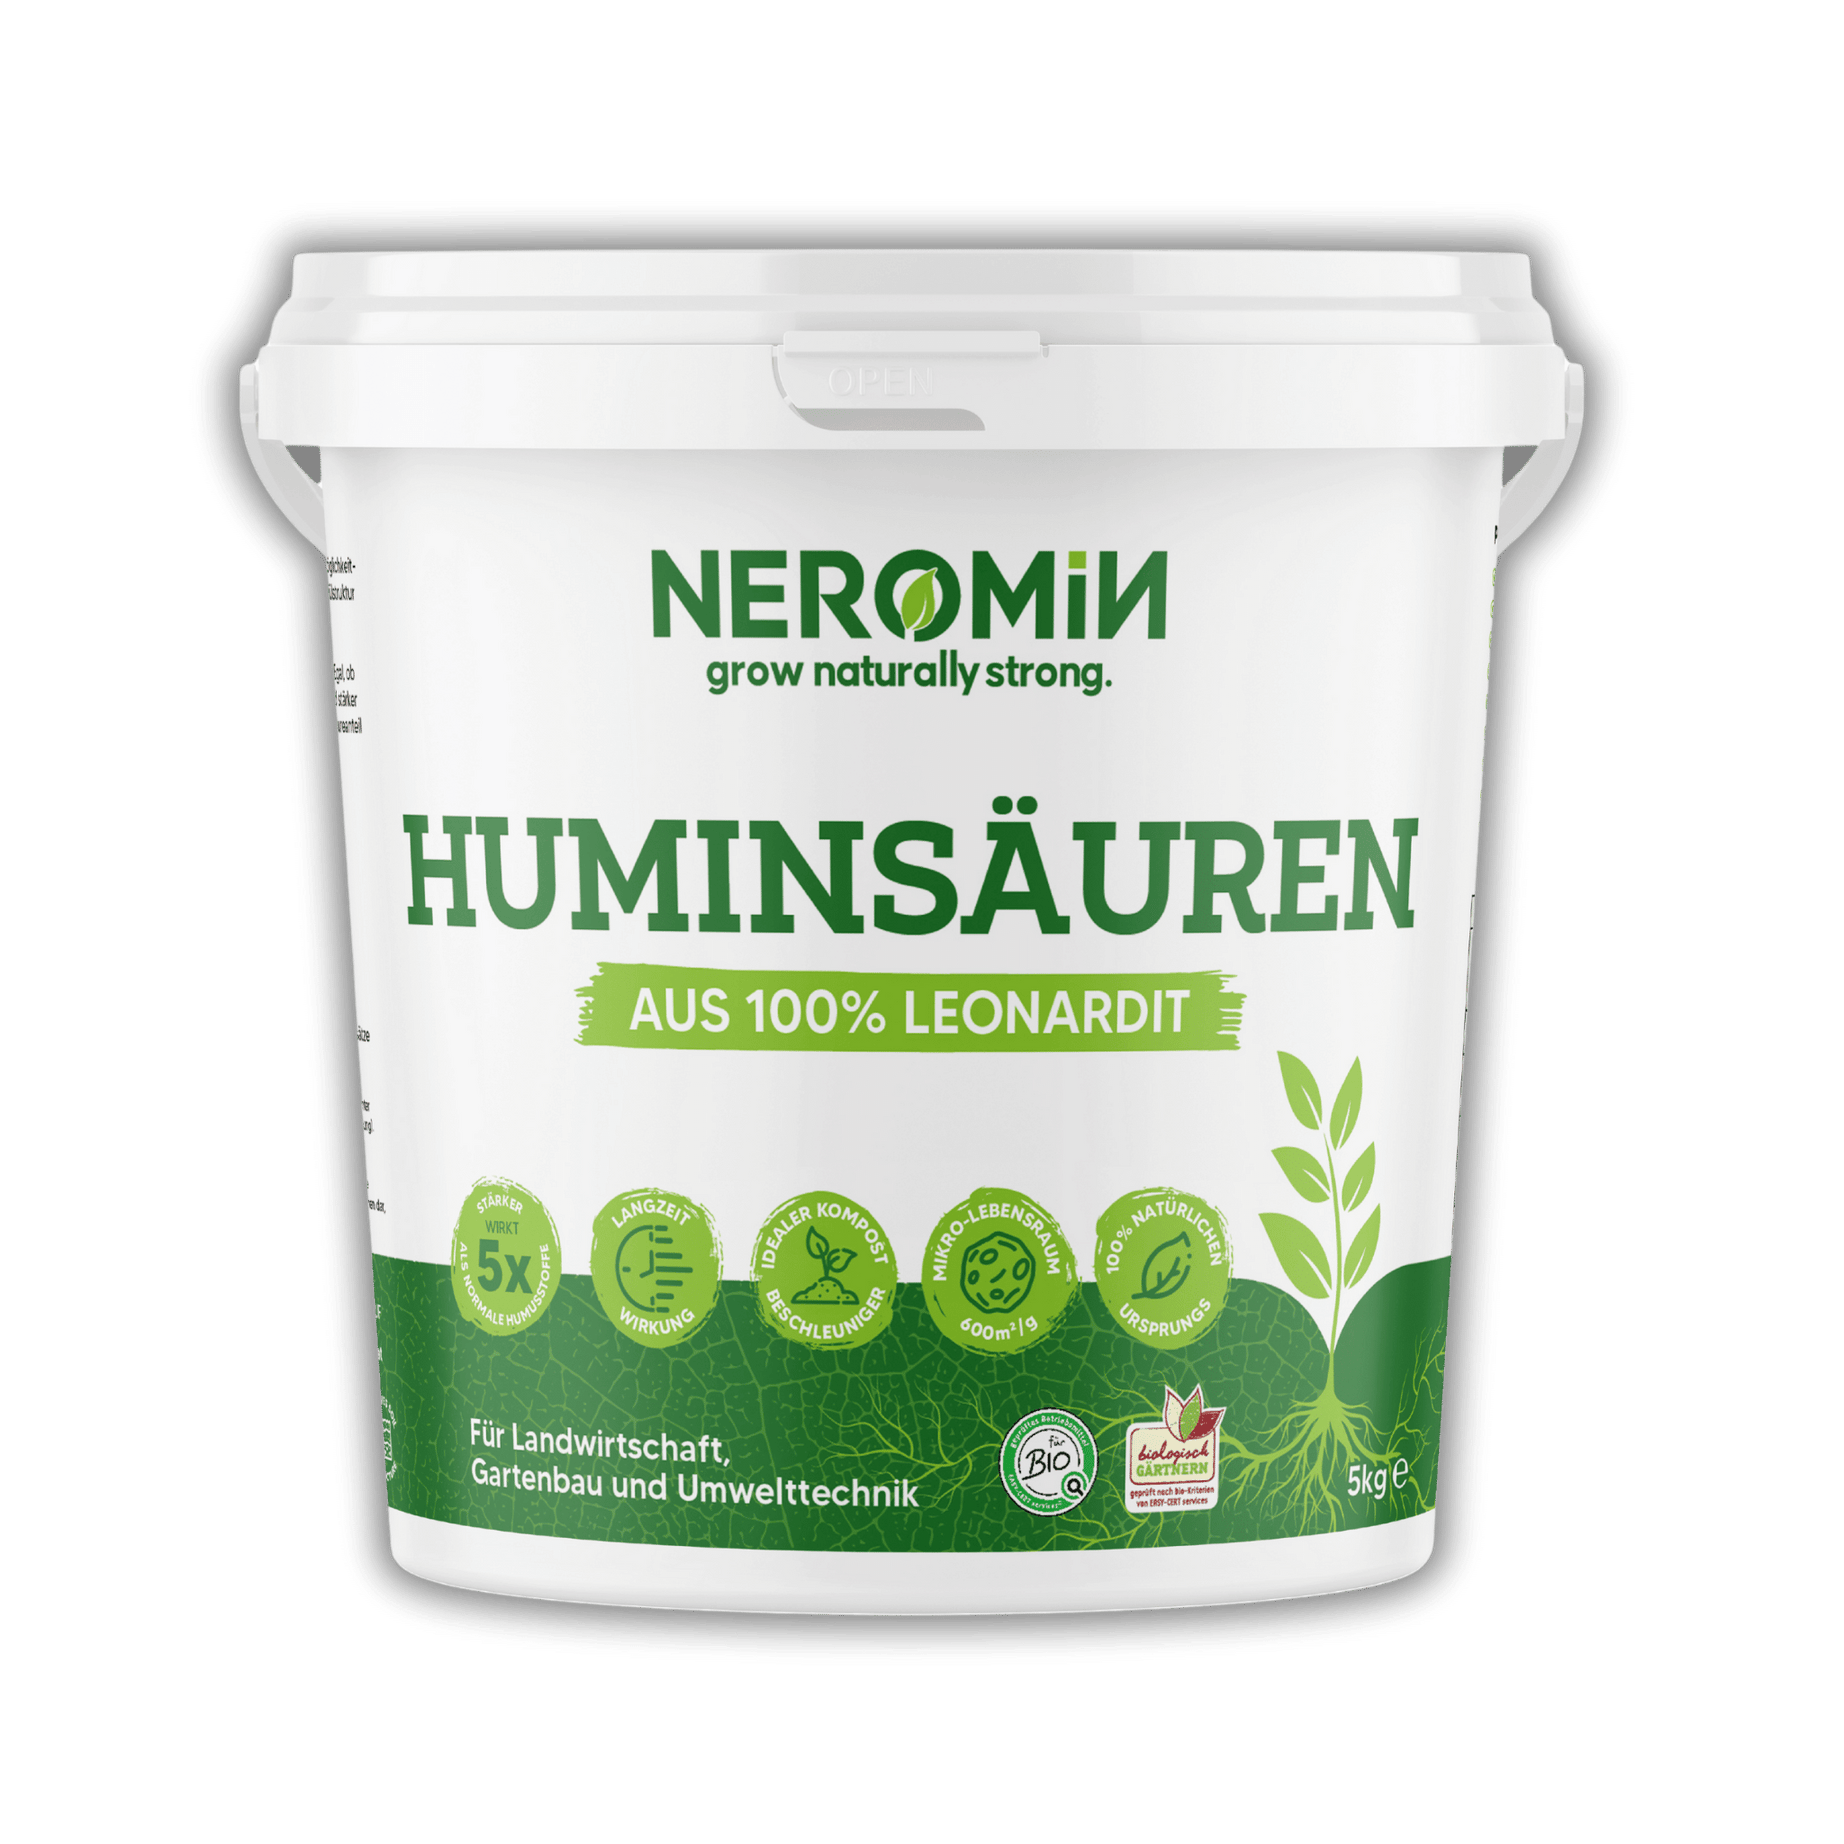 NEROMIN - Huminsäuren aus 100% Leonardit (5 Liter)